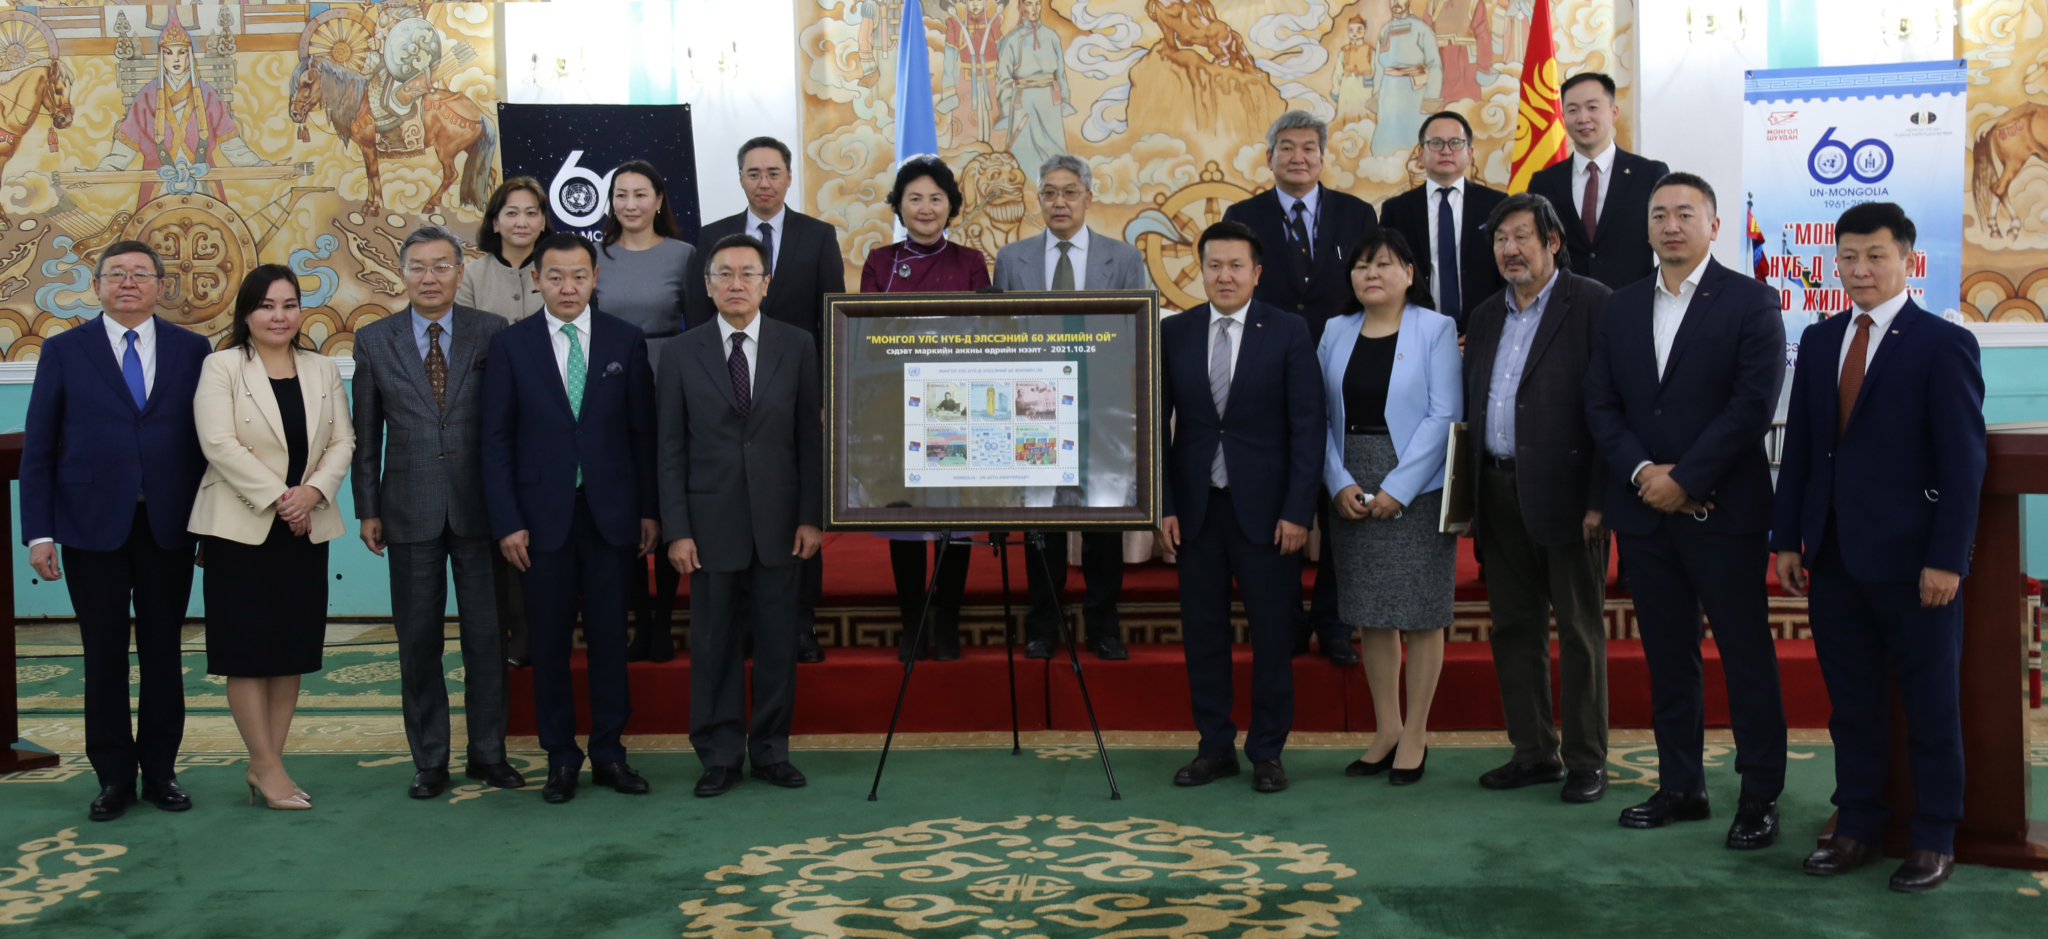 '몽골의 유엔 가입 60주년'을 주제로 한 우표 6장이 발행.jpg